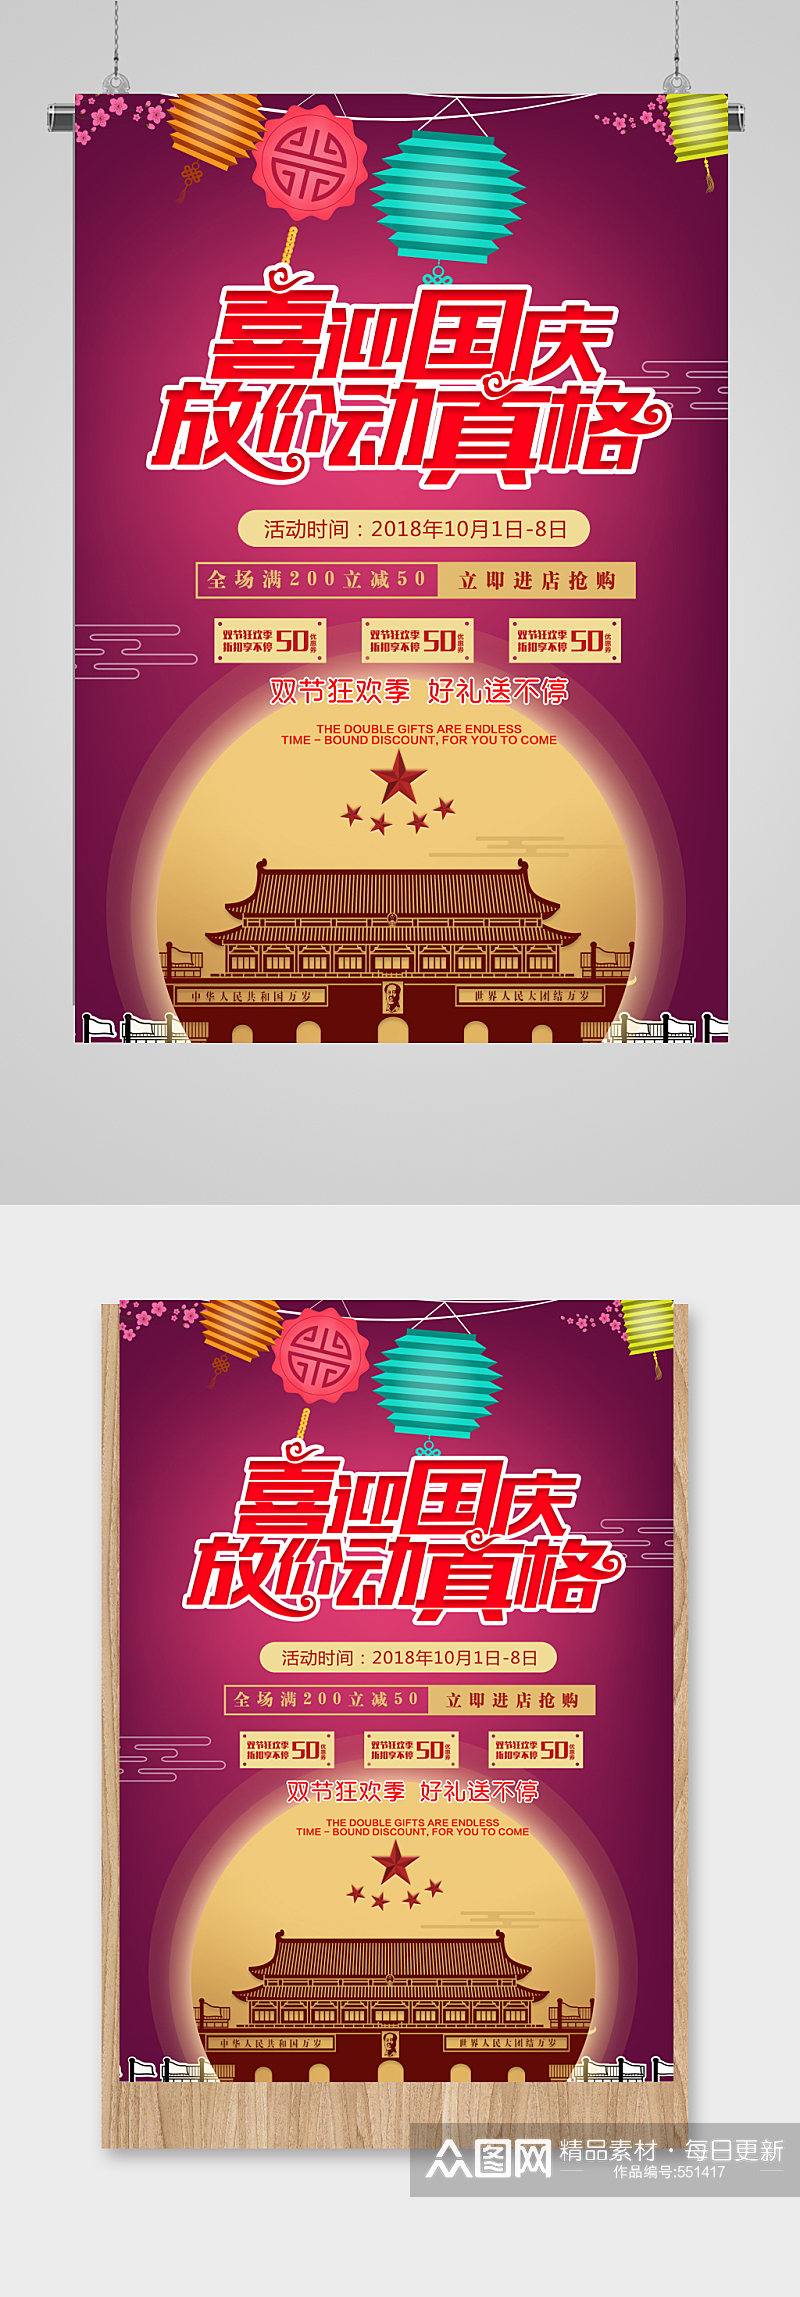 国庆节电商淘宝促销海报宣传单页欢乐购素材